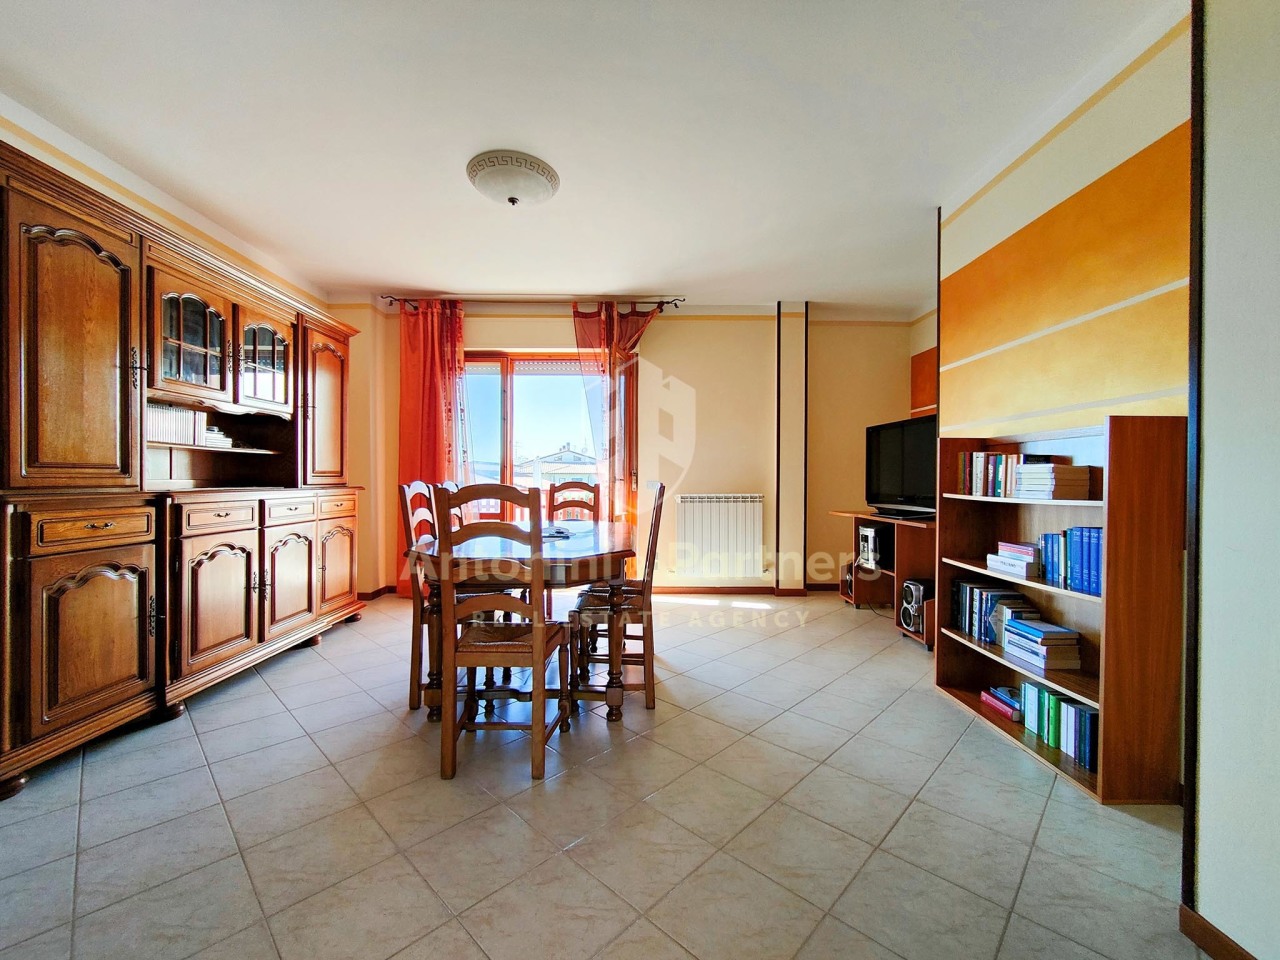 Appartamento in vendita a Marsciano, 5 locali, prezzo € 110.000 | PortaleAgenzieImmobiliari.it